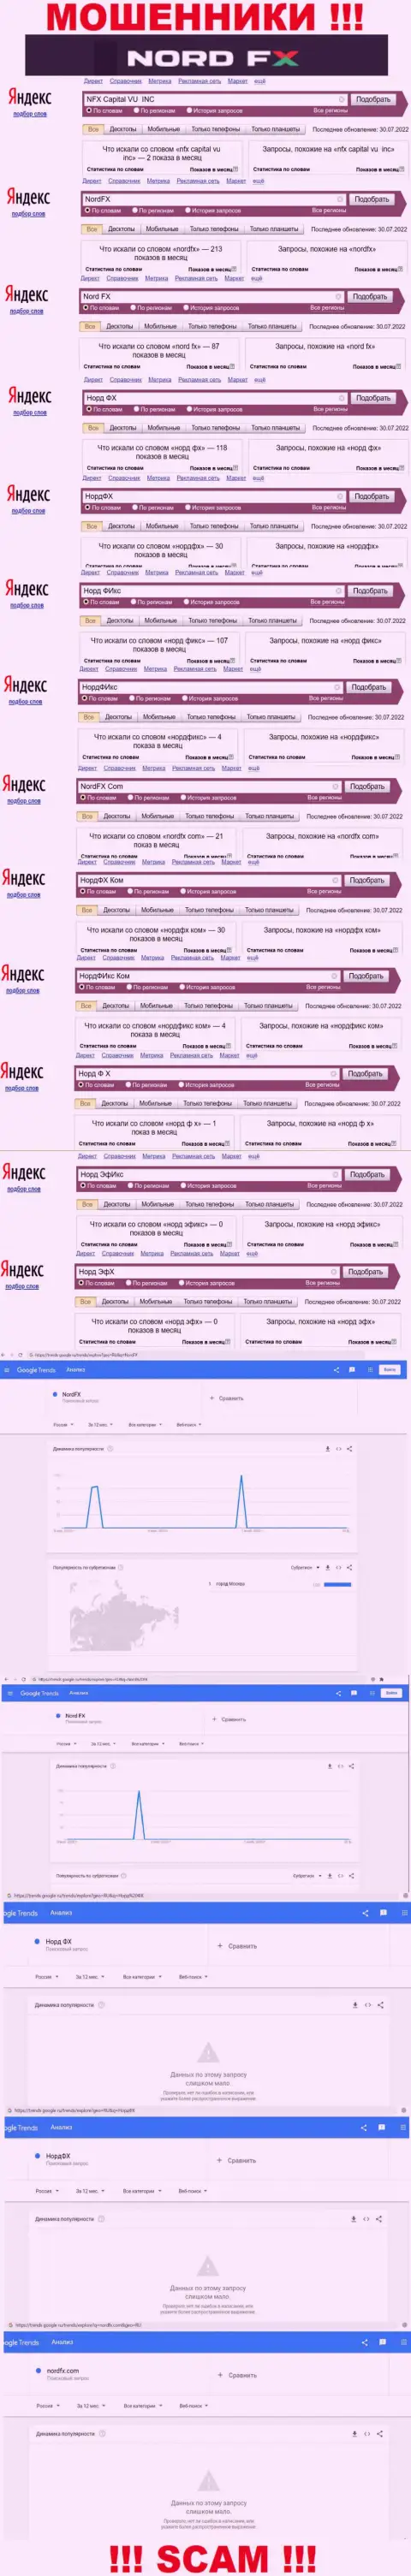 Количество online-запросов в поисковиках по бренду мошенников Nord FX